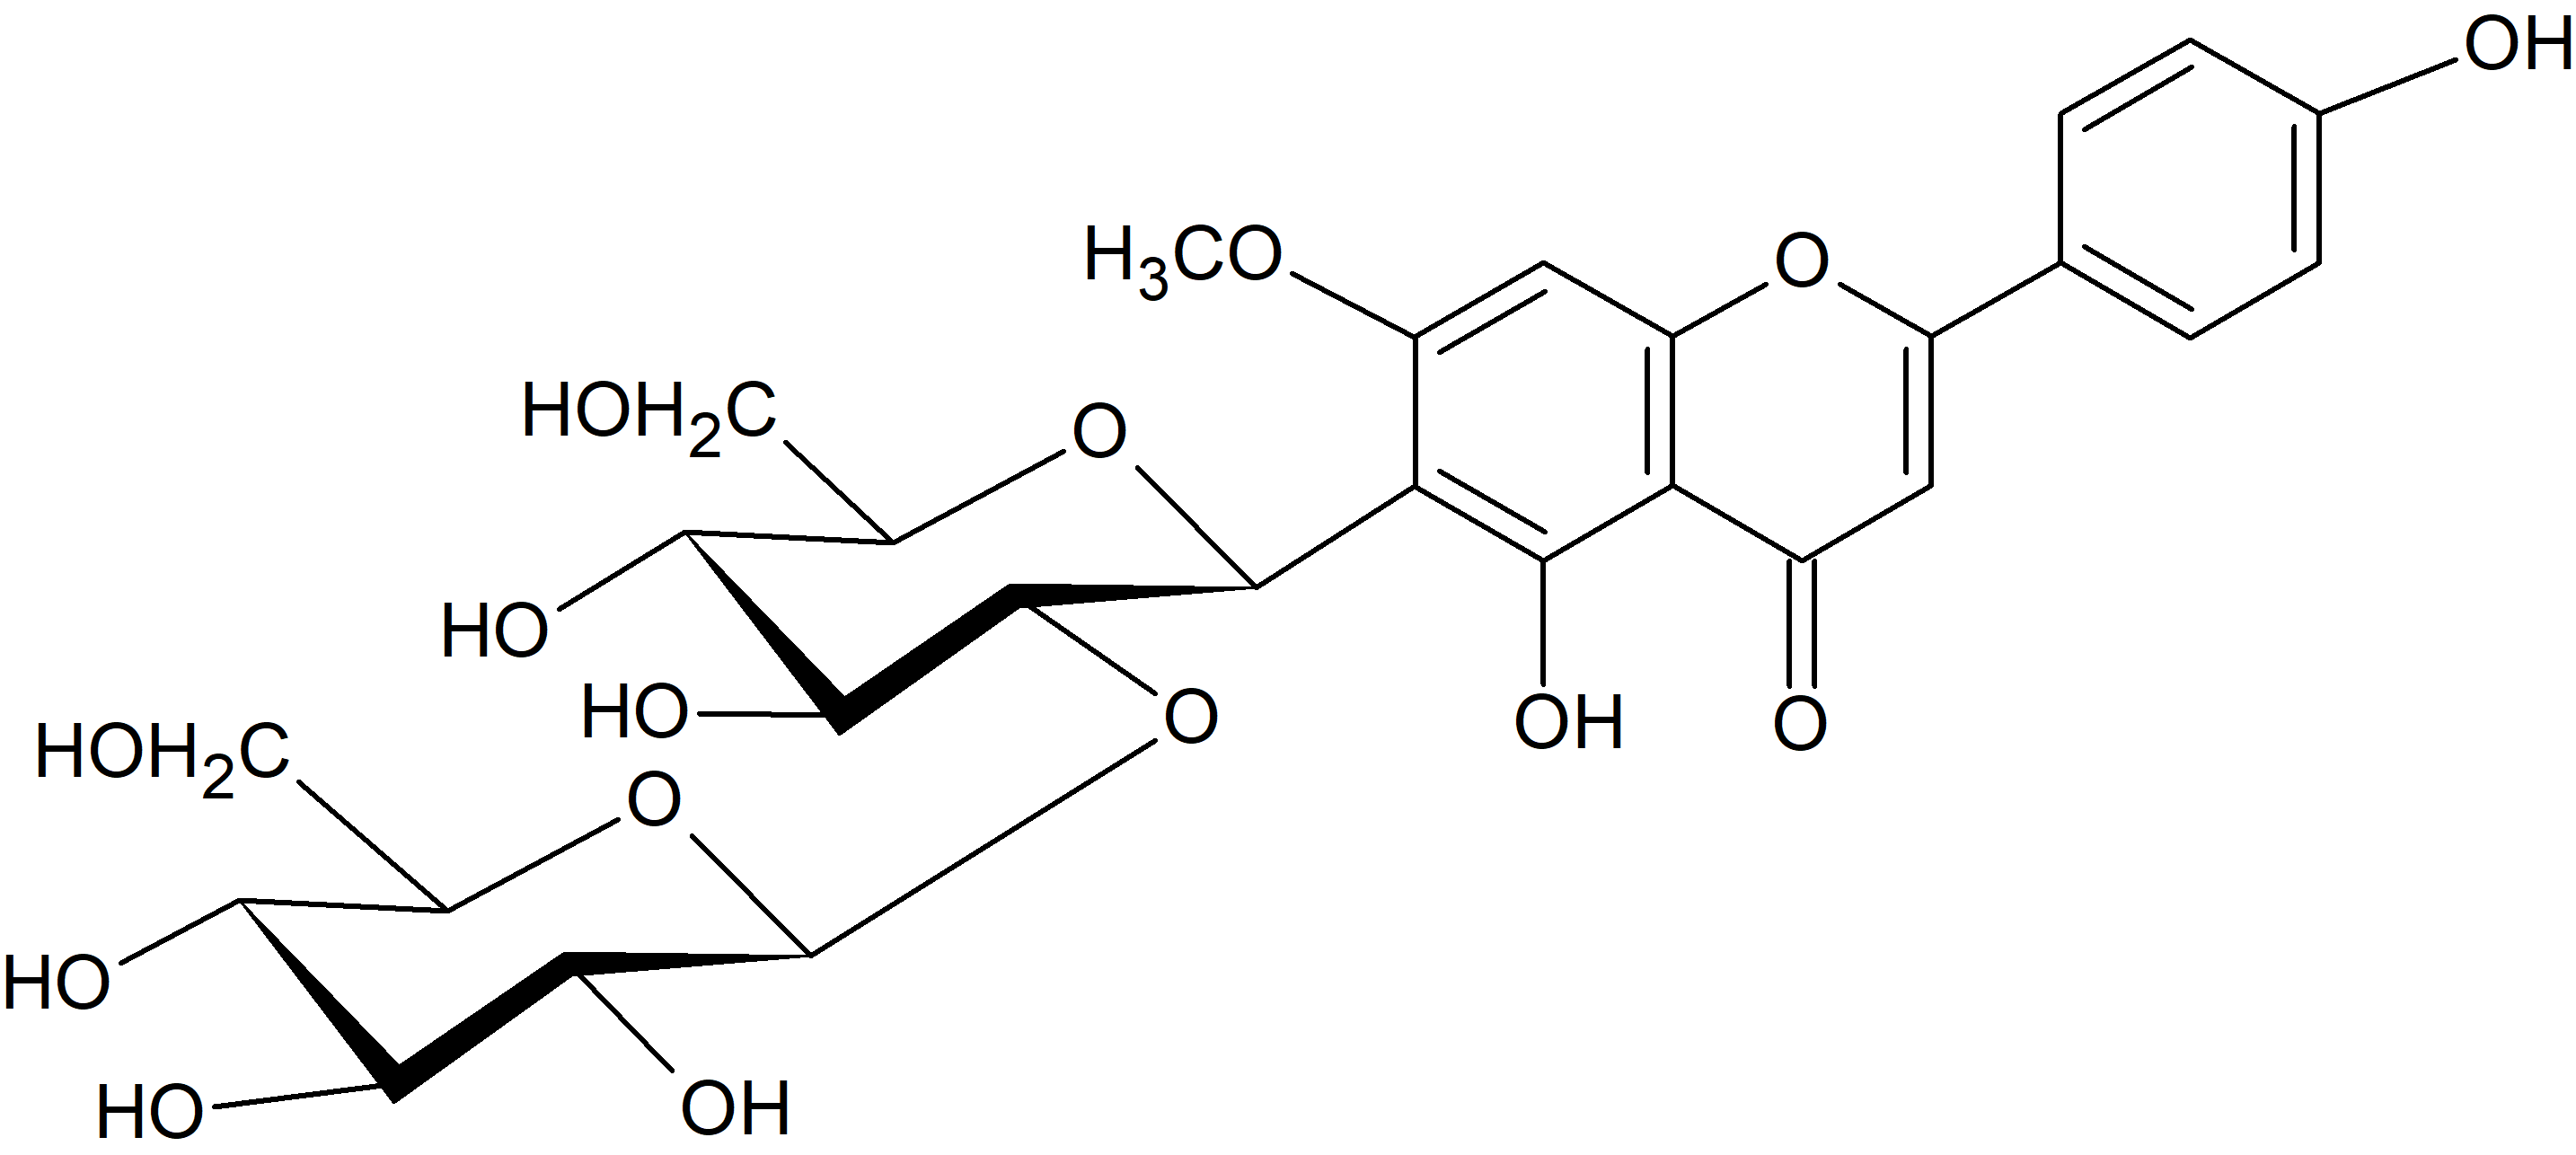 5,4'-Dihydroxy-7-methoxyflavone 6-C-glucoside-2''-O-glucoside